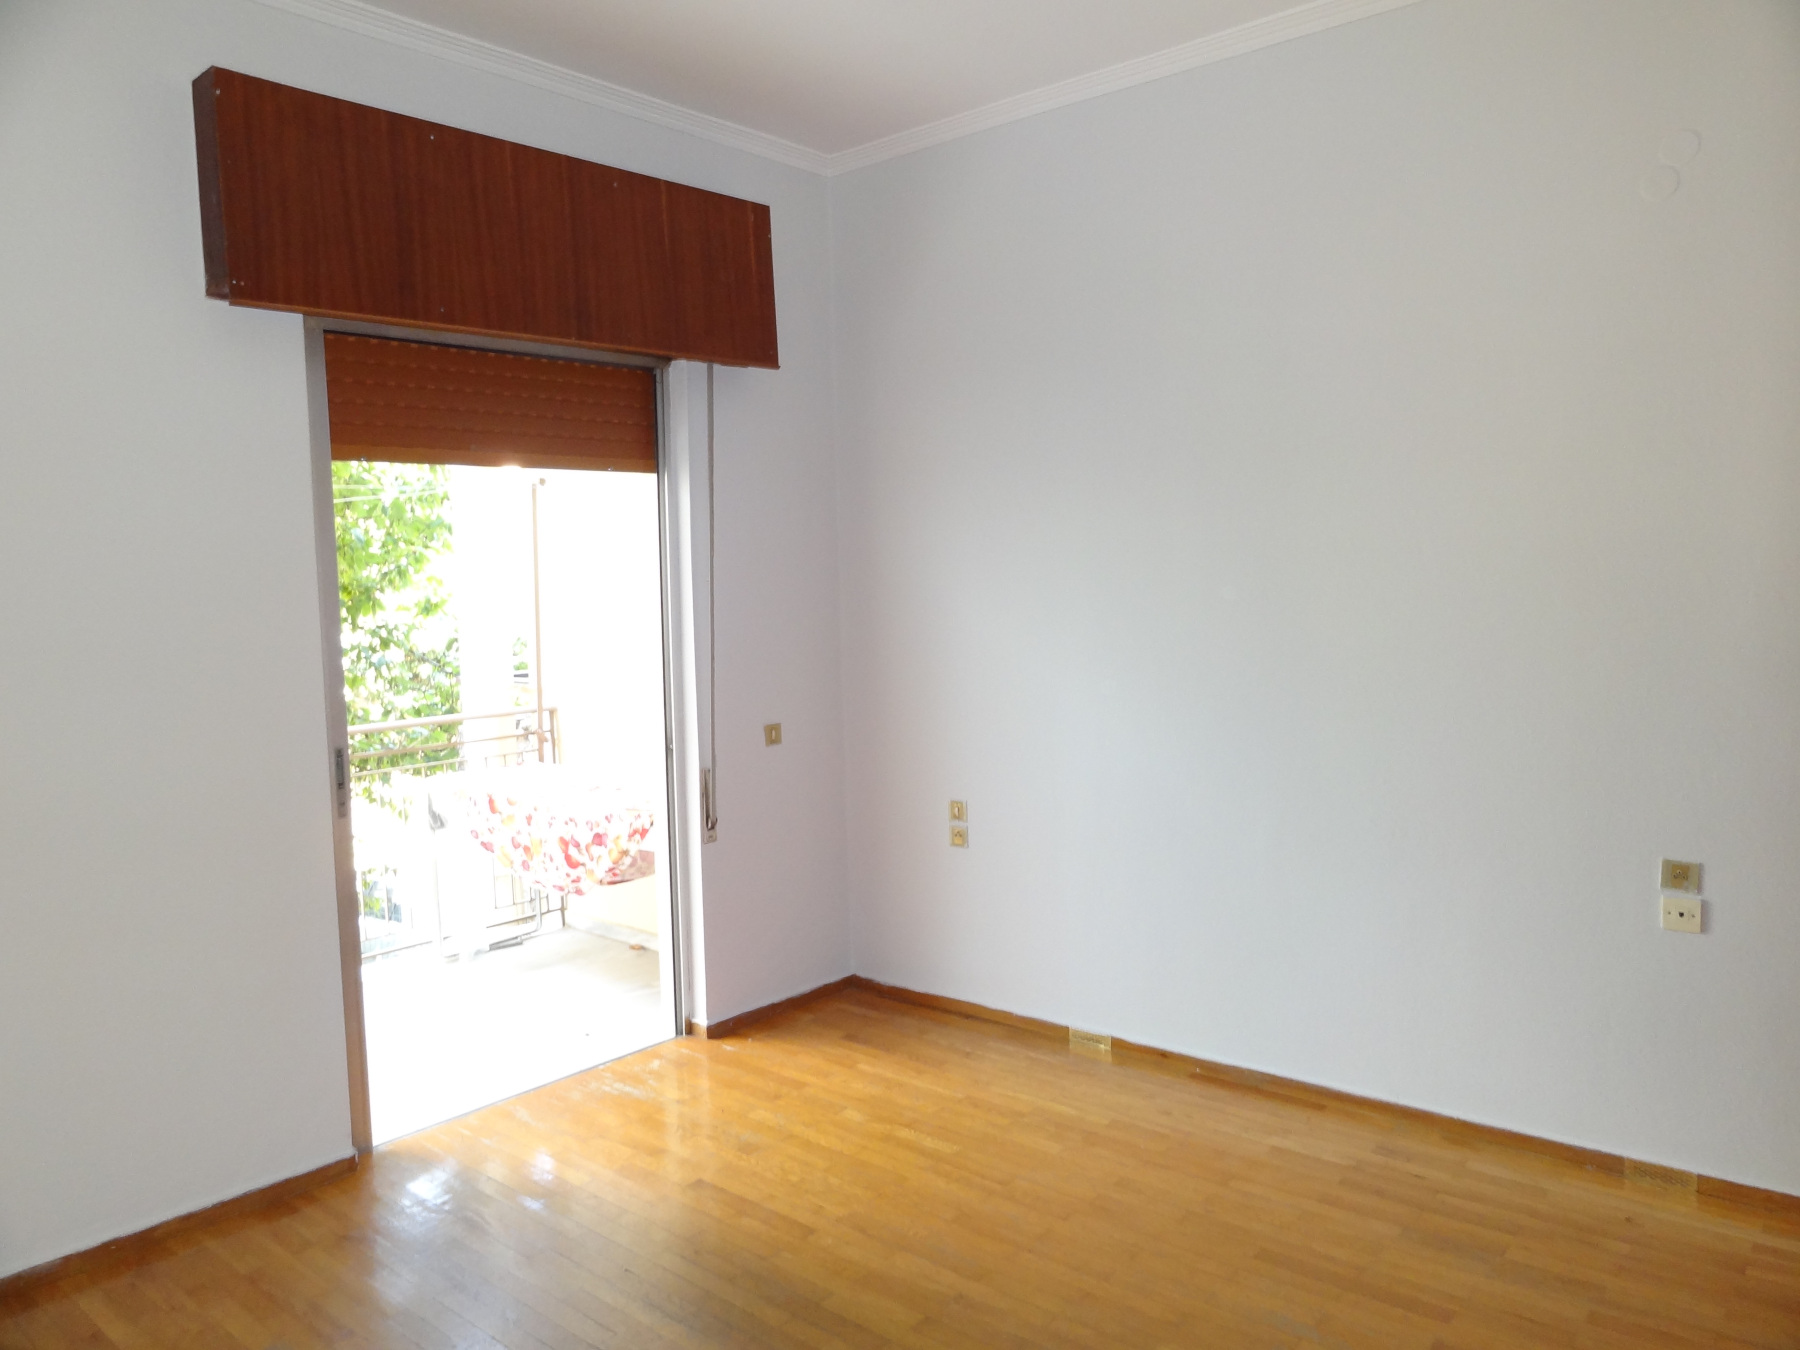 Studio for rent, 38 sq.m. 1st floor near Pargis square in the center of Ioannina